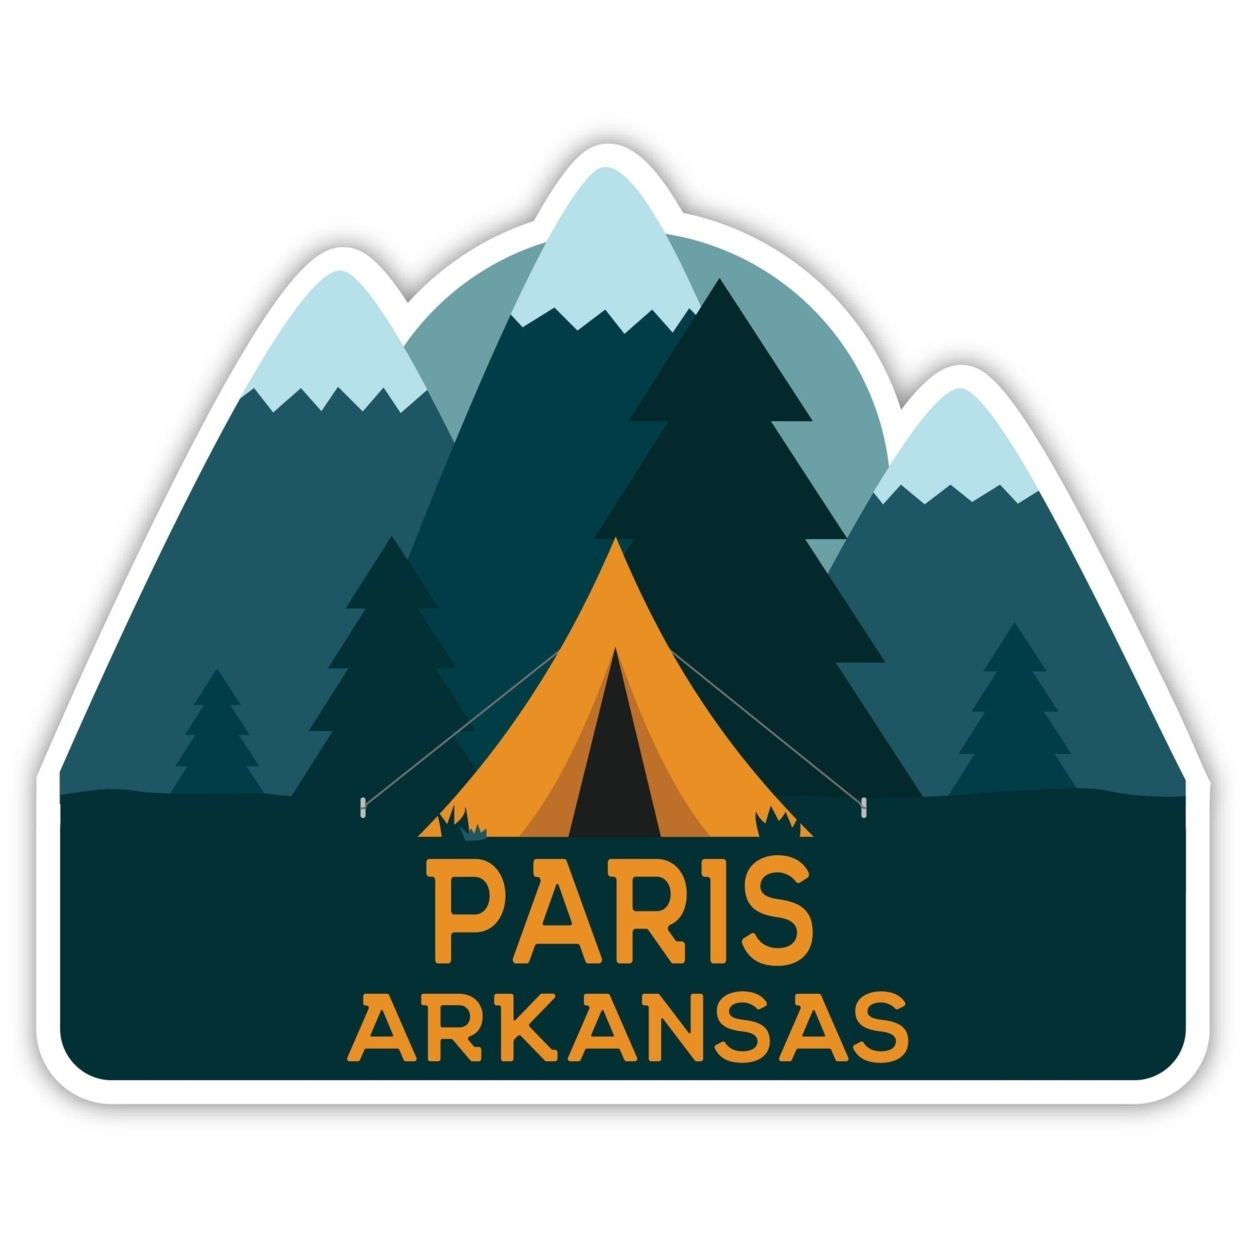 Paris Arkansas Souvenir Decorative Stickers (Choose Theme And Size) - Single Unit, 4-Inch, Tent